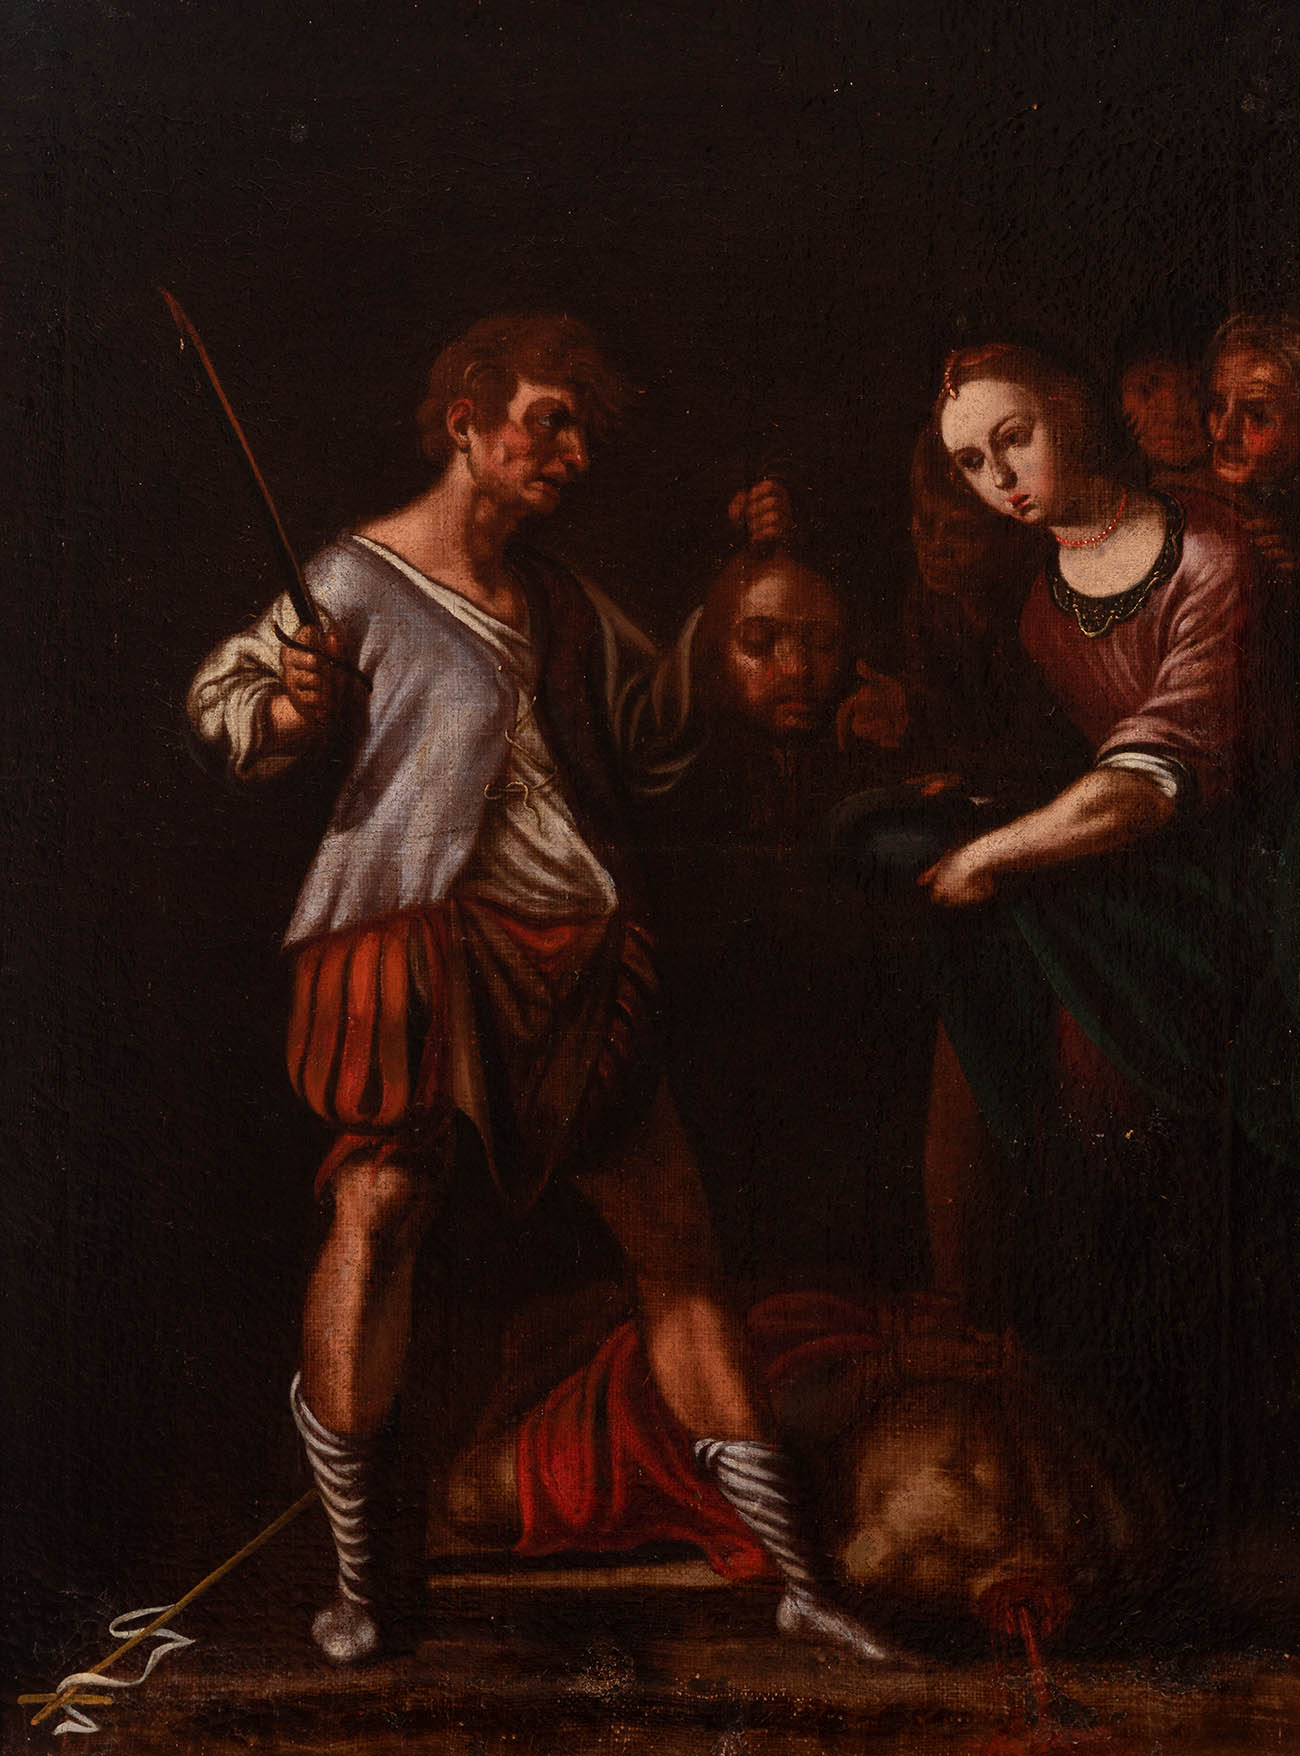 Workshop of ANTONIO DEL CASTILLO Y SAAVEDRA (Cordoba, 1616 - 1668)."Salome receiving the head of